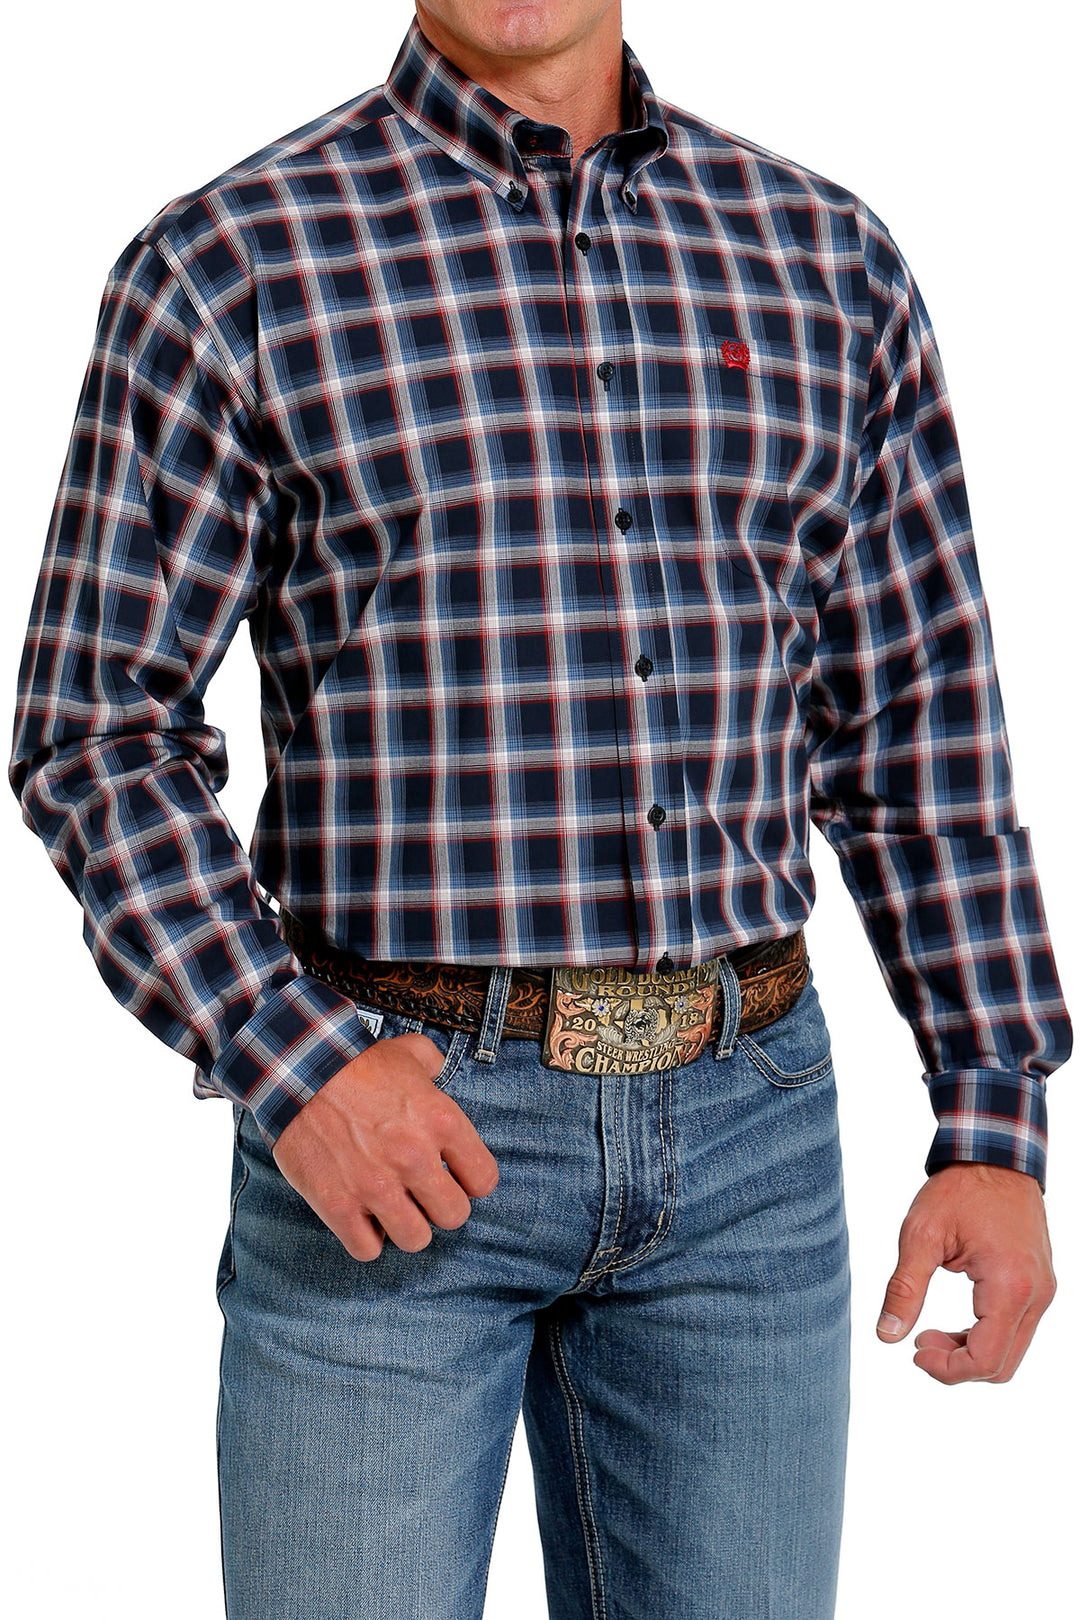 Camicia abbottonata a maniche lunghe scozzese blu scuro Cinch da uomo - MTW1105624